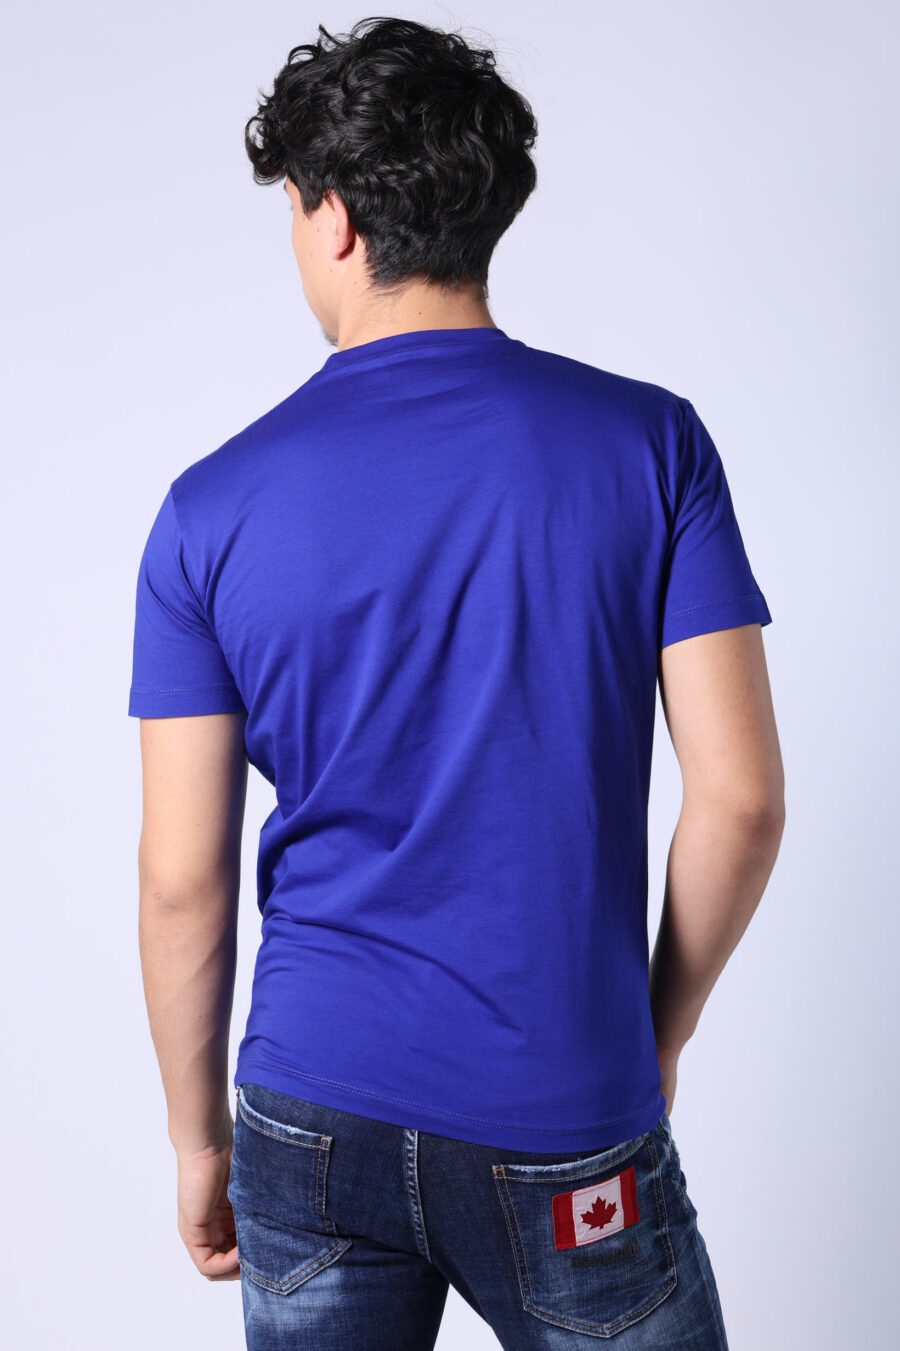 Elektrisch blaues T-Shirt mit weißem "Icon" Maxilogo - Untitled Catalog 05401